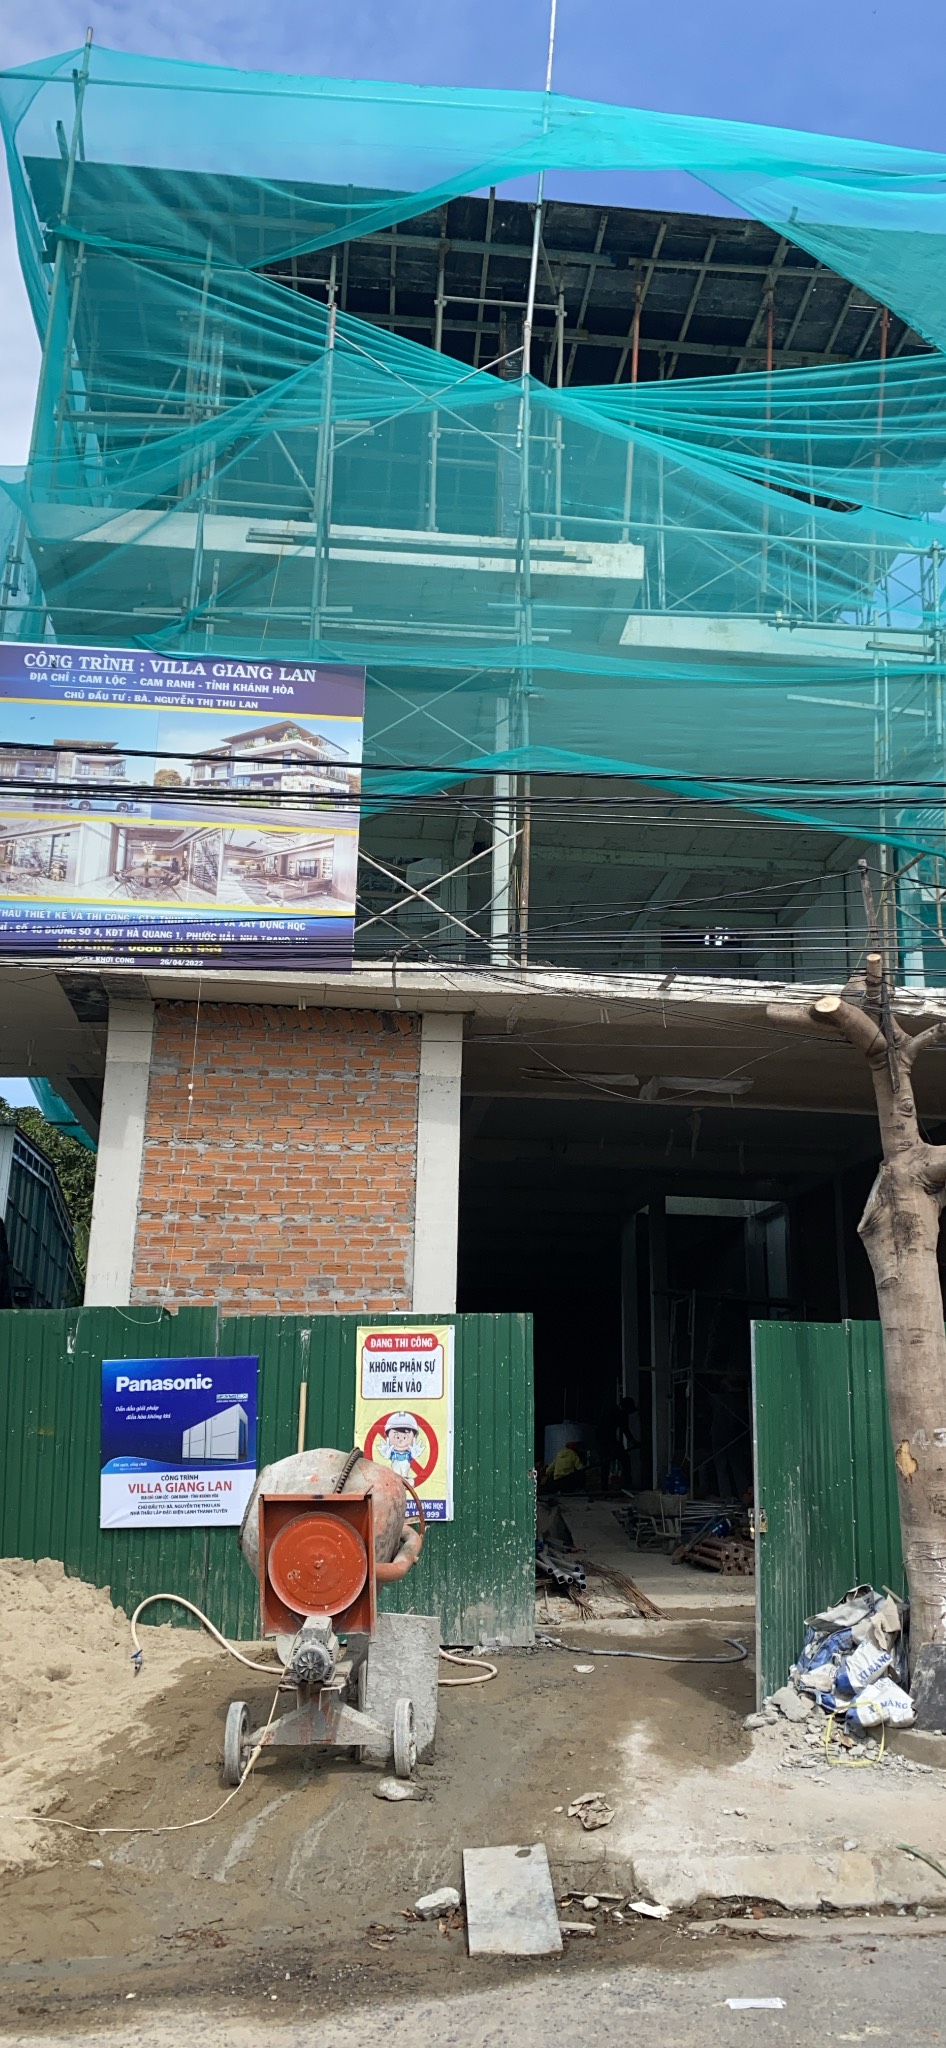 Thi công lắp đặt nhà thông minh SmartHome công trình anh Giang tại Cam Ranh - Khánh Hòa